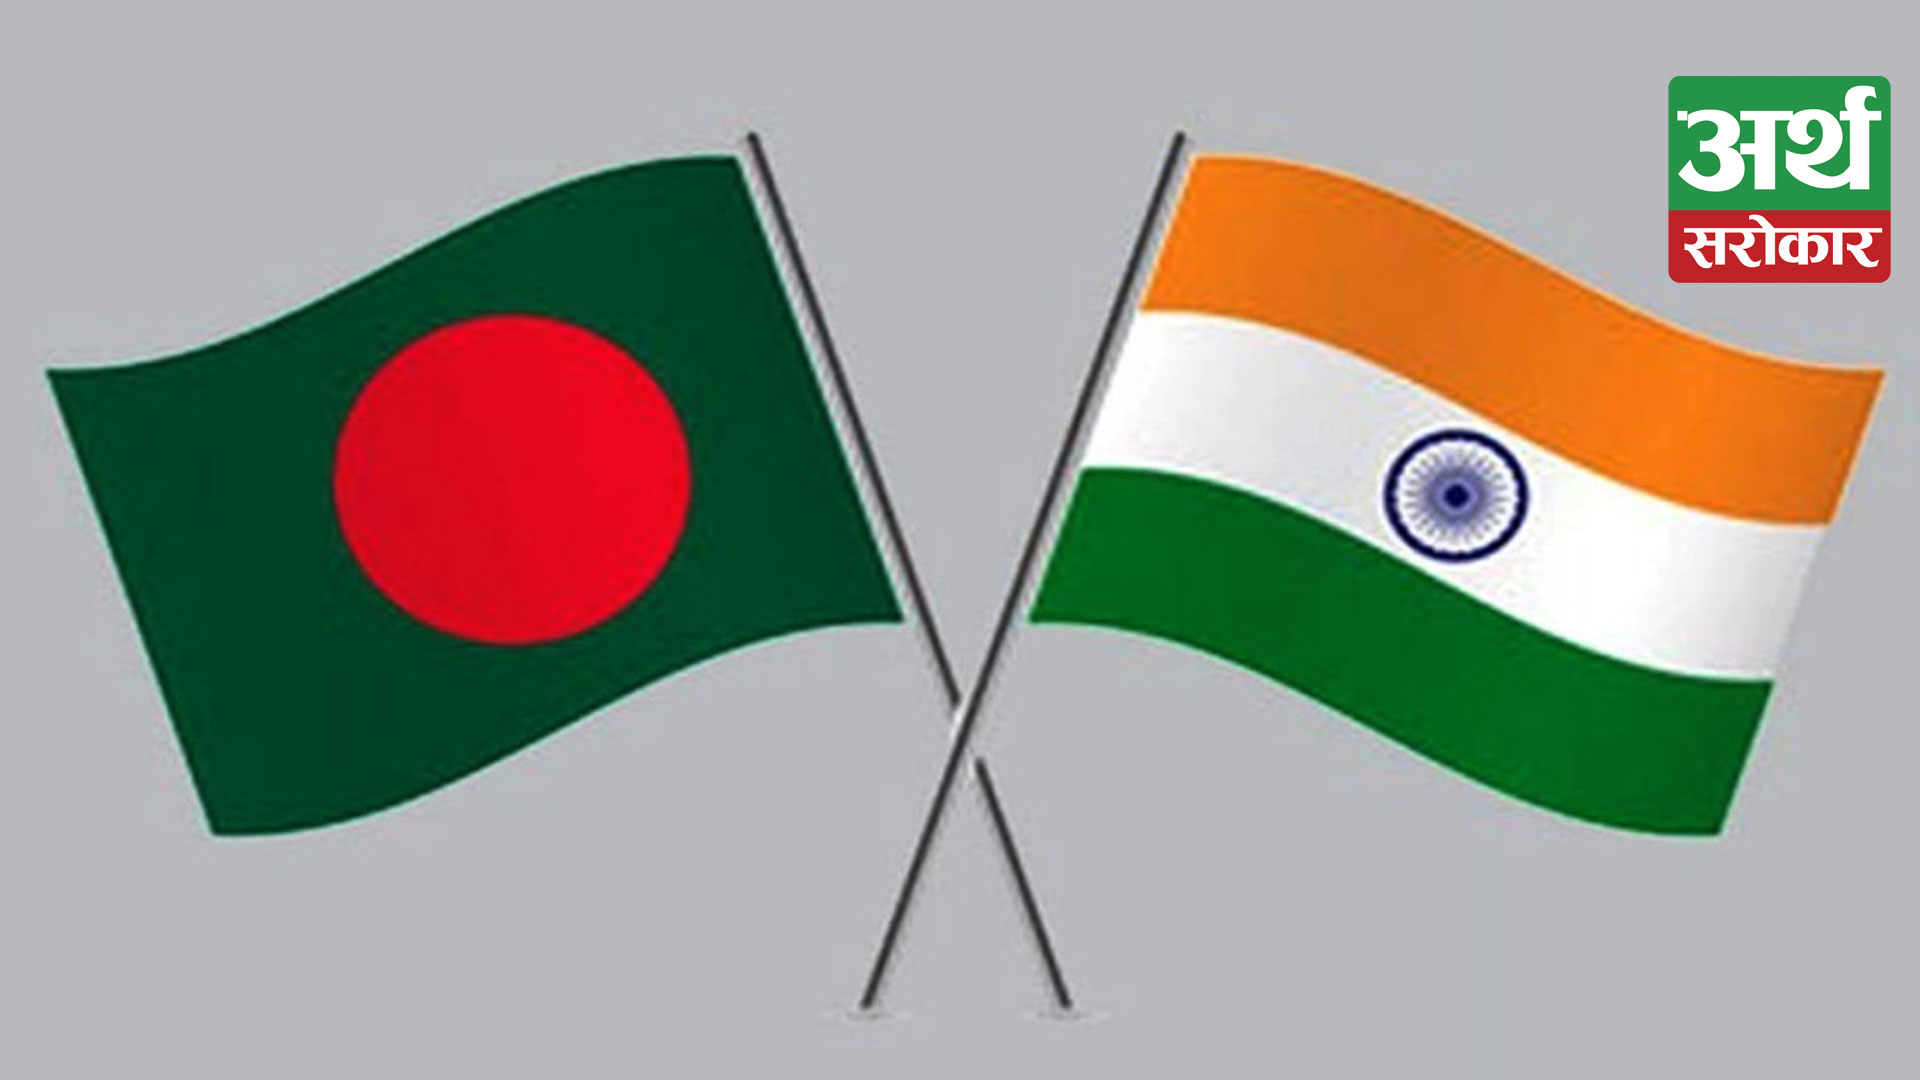 Significance of Bangladesh PM Sheikh Hasina’s upcoming India visit